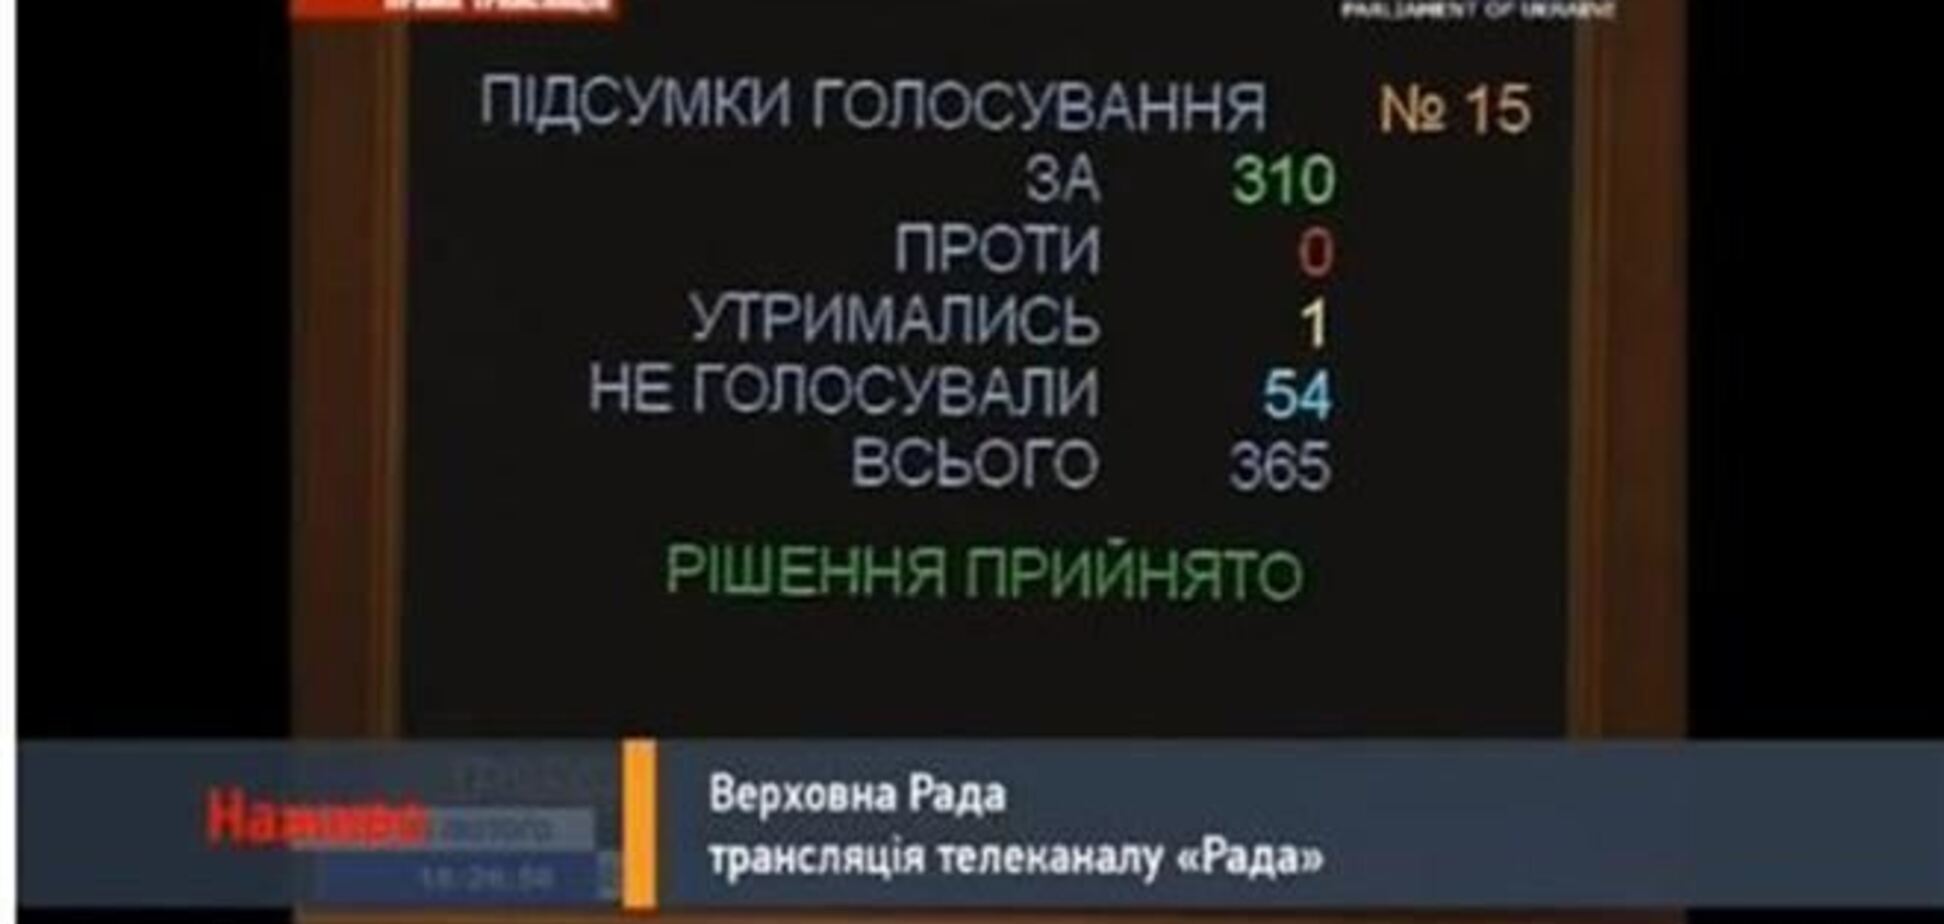 Список депутатов, не голосовавших за освобождение активистов от преследований